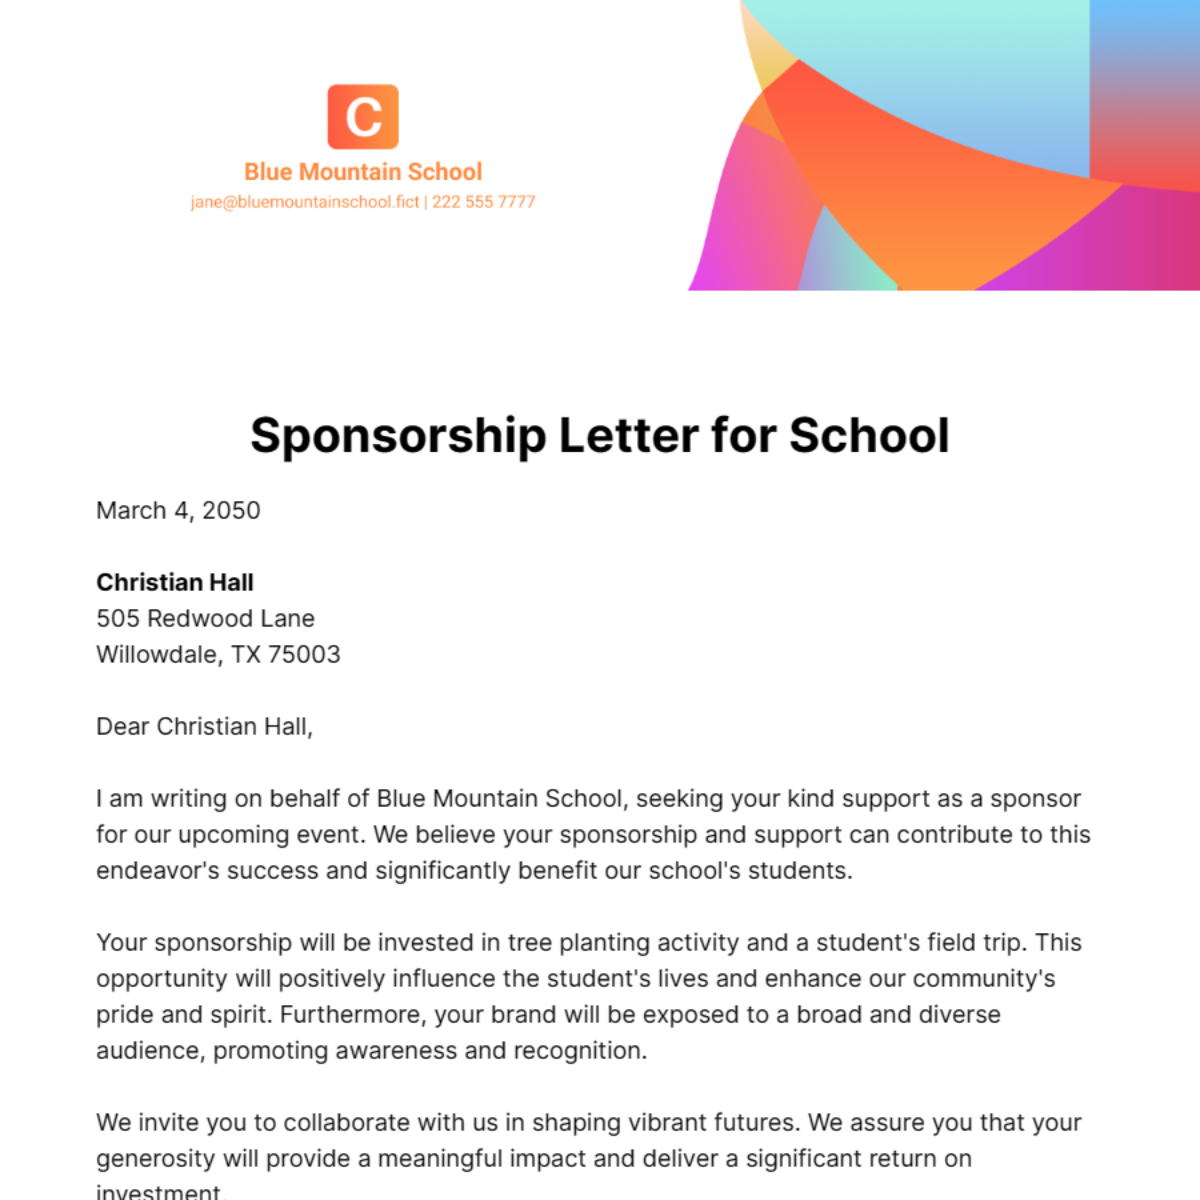 Sponsorship Letter for School Template